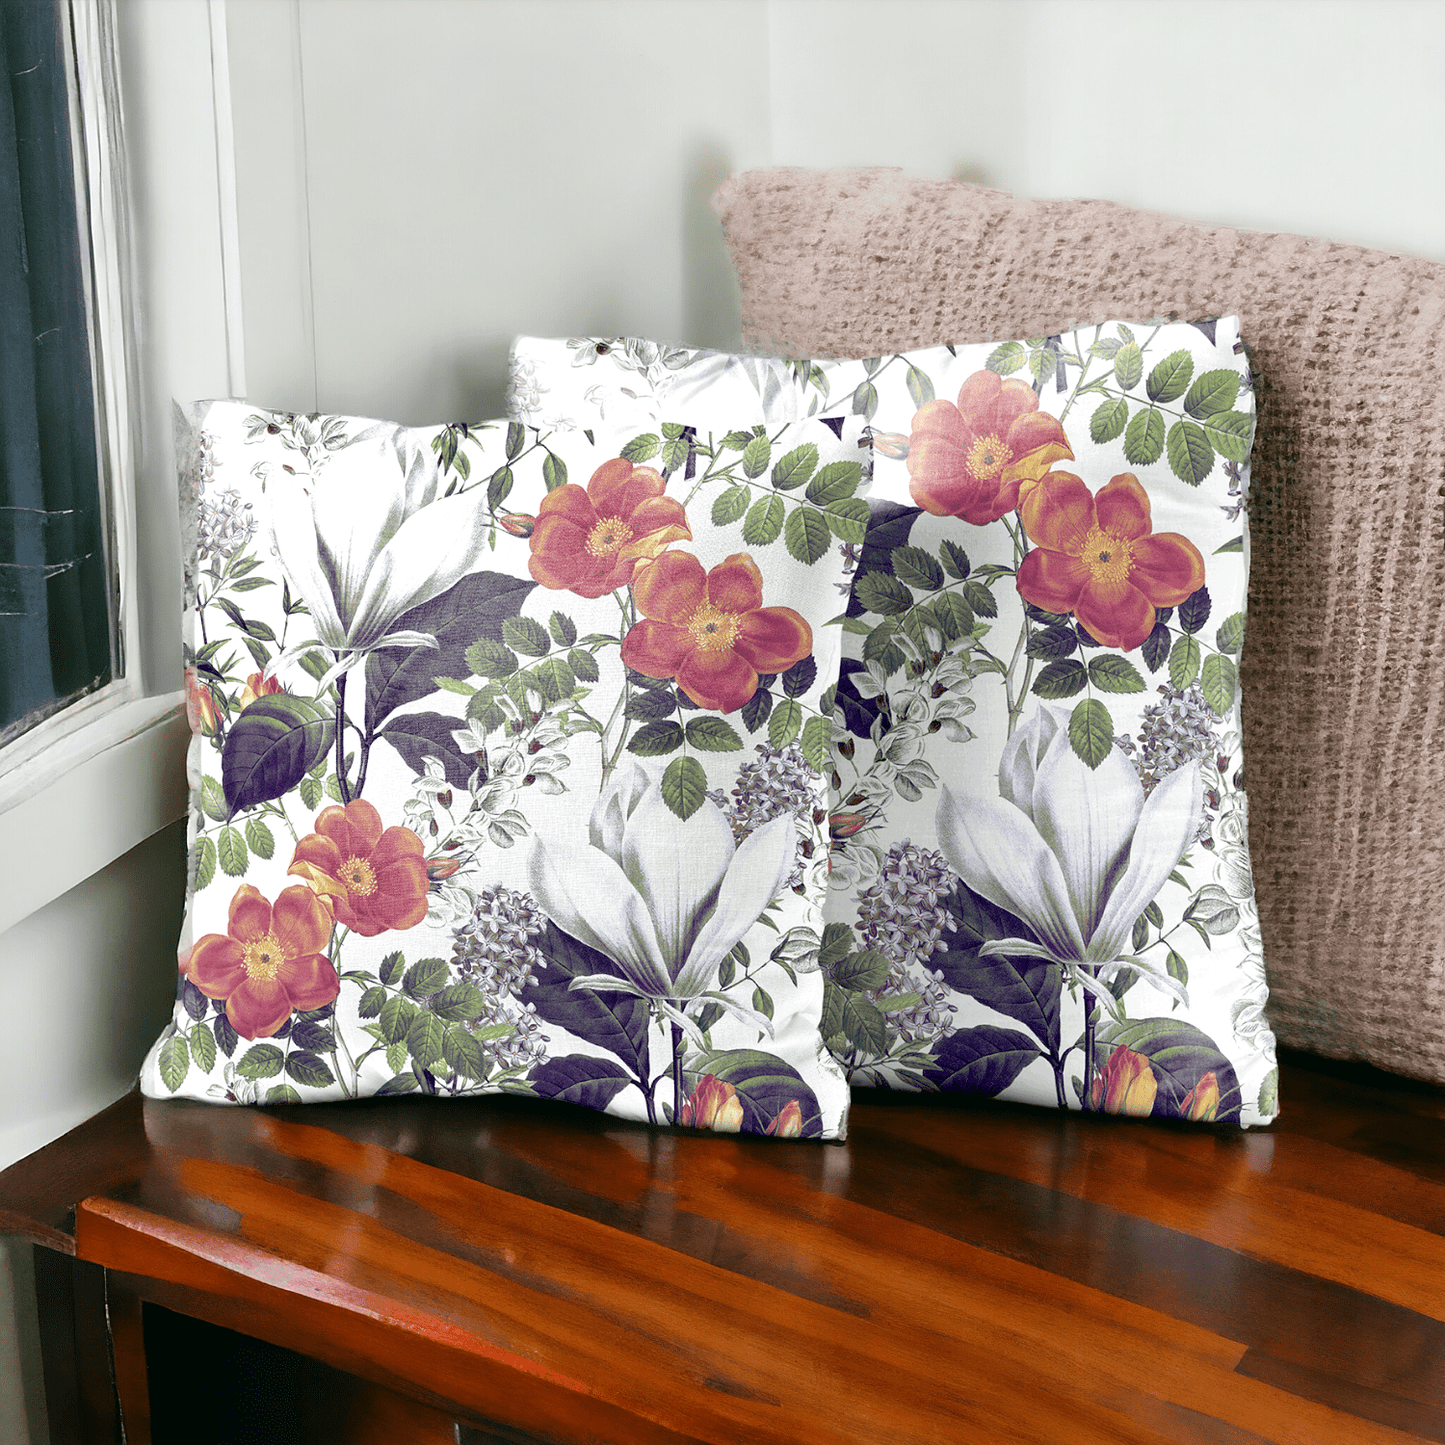 Sunlit Flora Velvet Cushion Cover - Set of 2